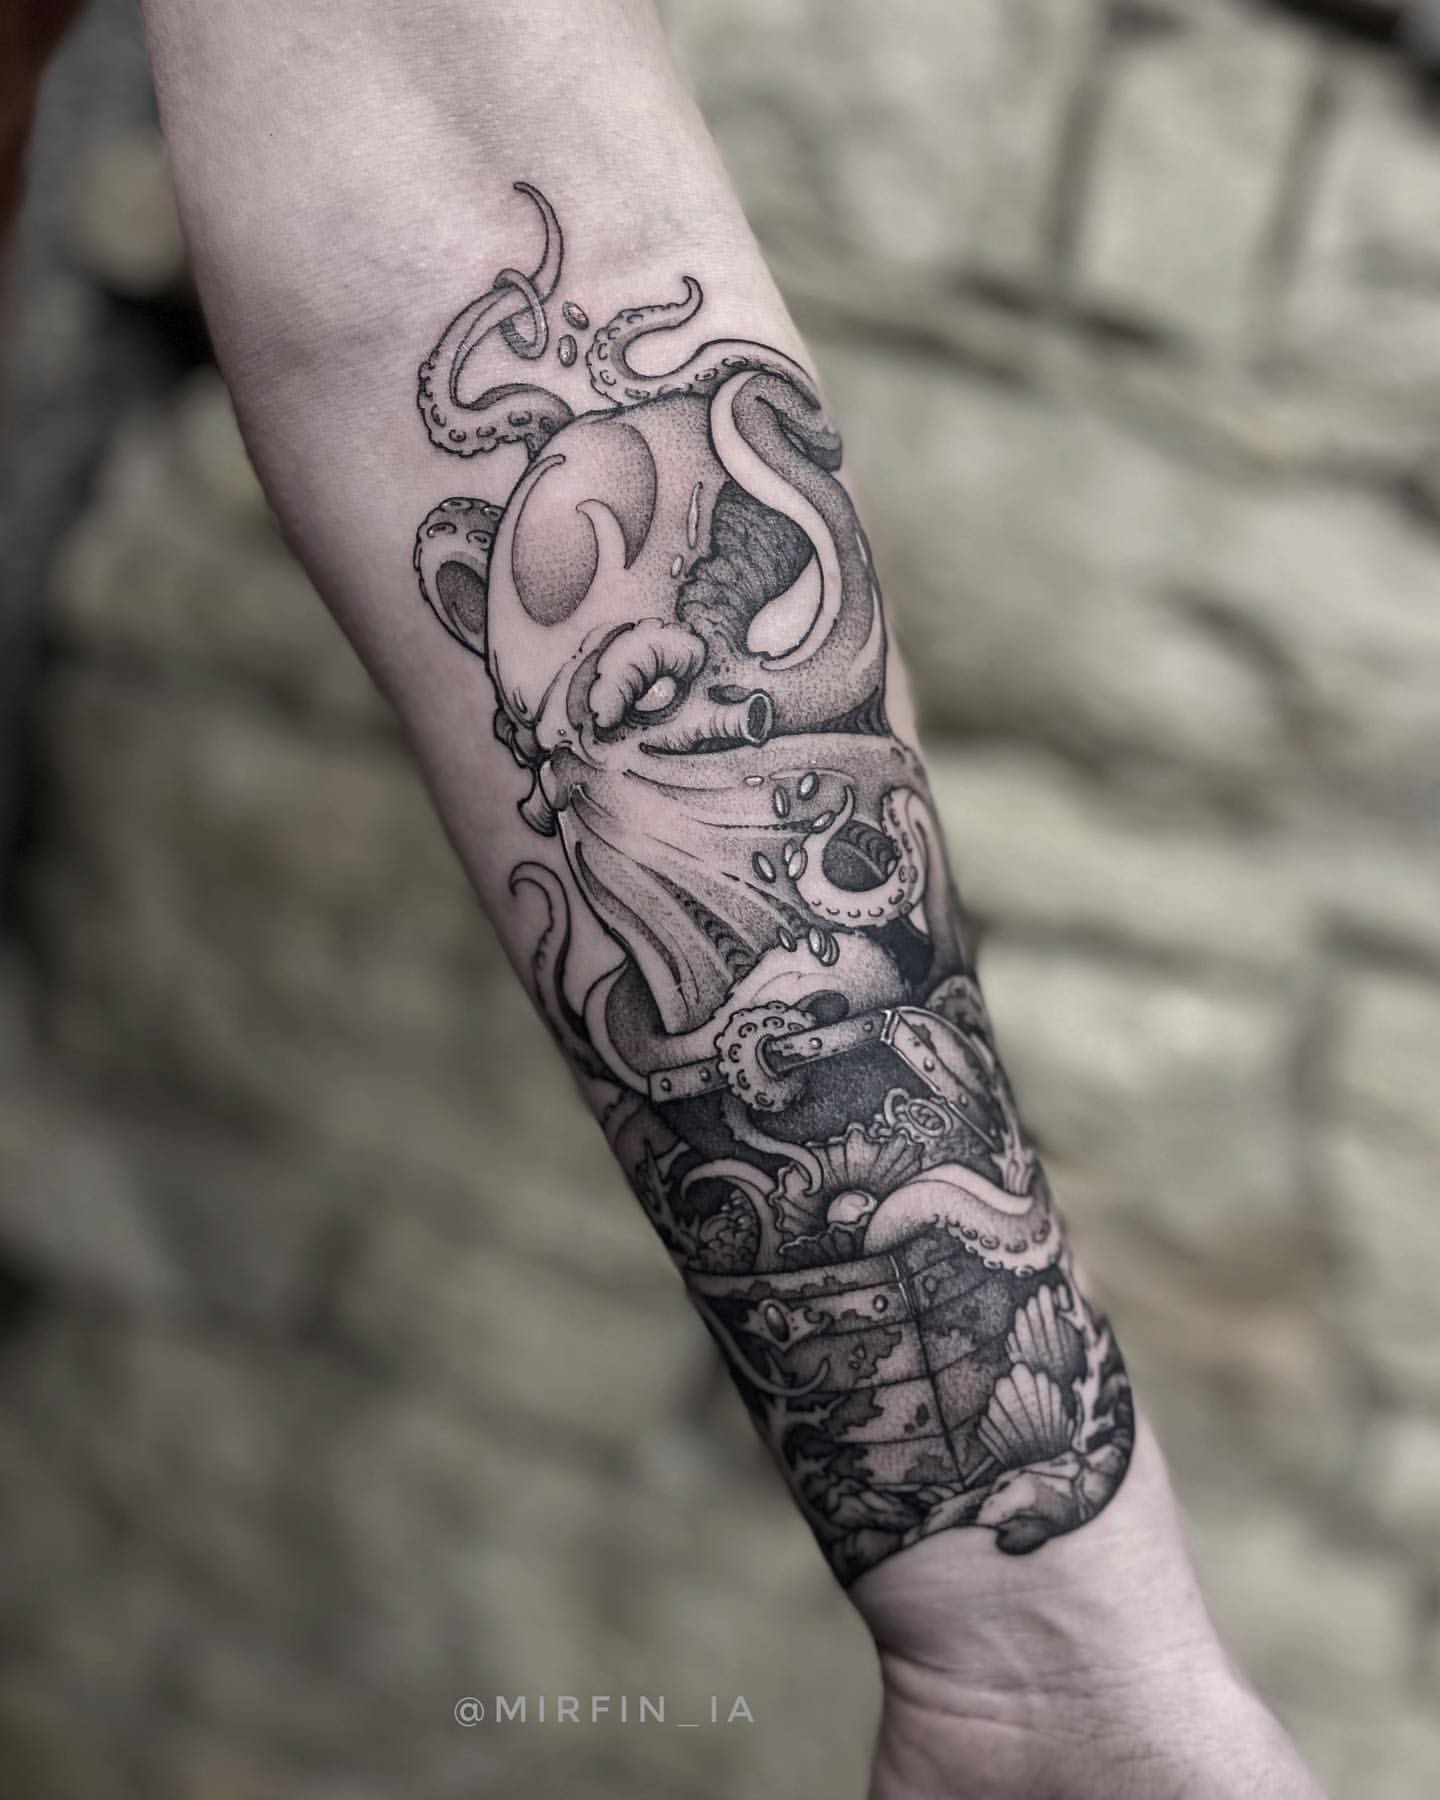 Forearm kraken tattoo